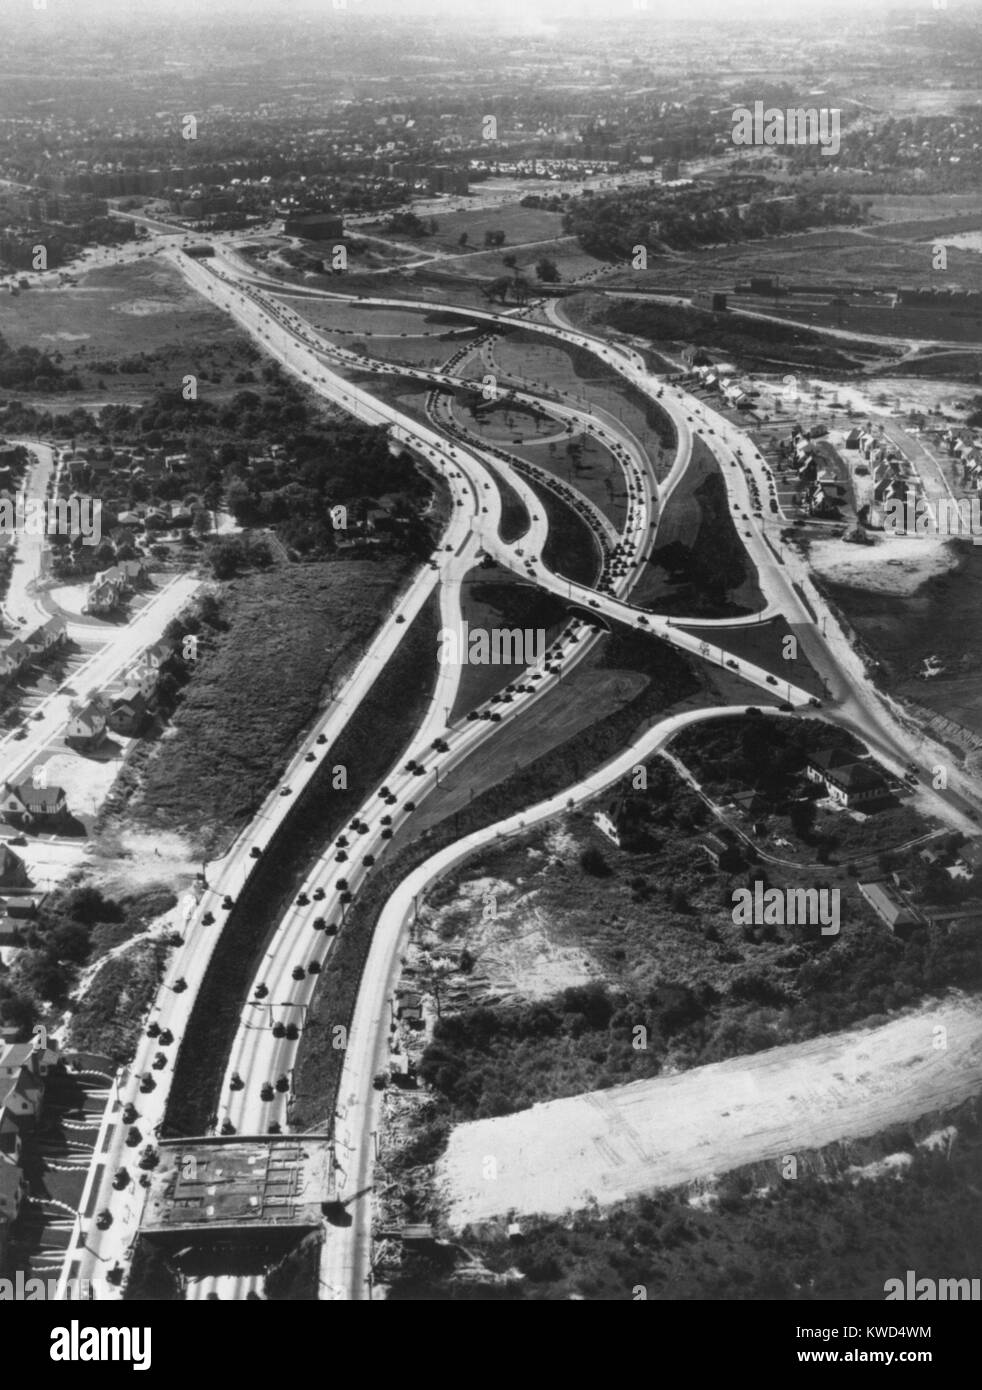 Vista aérea de la autopista de acceso limitado en Long Island. Las nuevas carreteras proporcionan acceso desde el creciente suburbio de la ciudad de Nueva York. Ca. 1946. (BSLOC 2014 13 190) Foto de stock